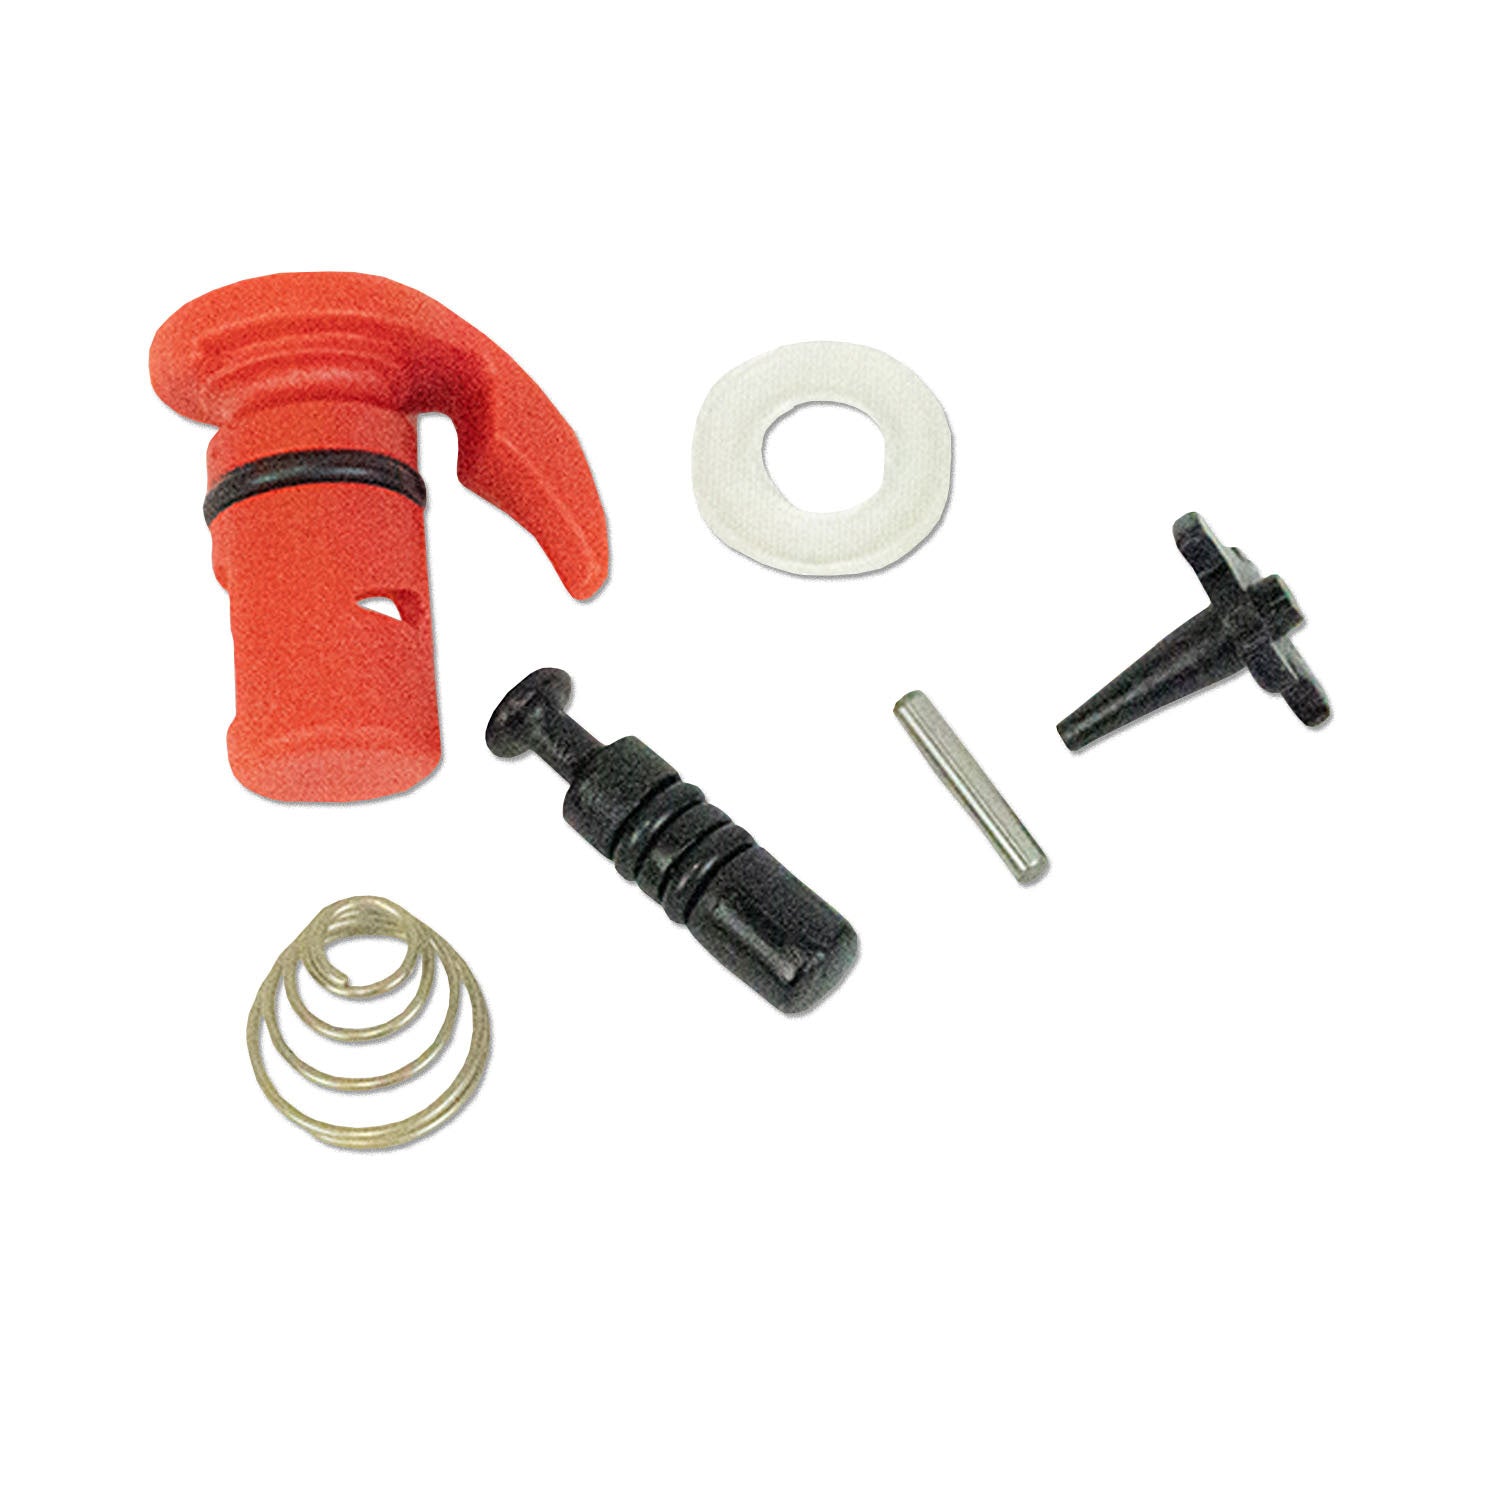 sander-throttle-valve-kit